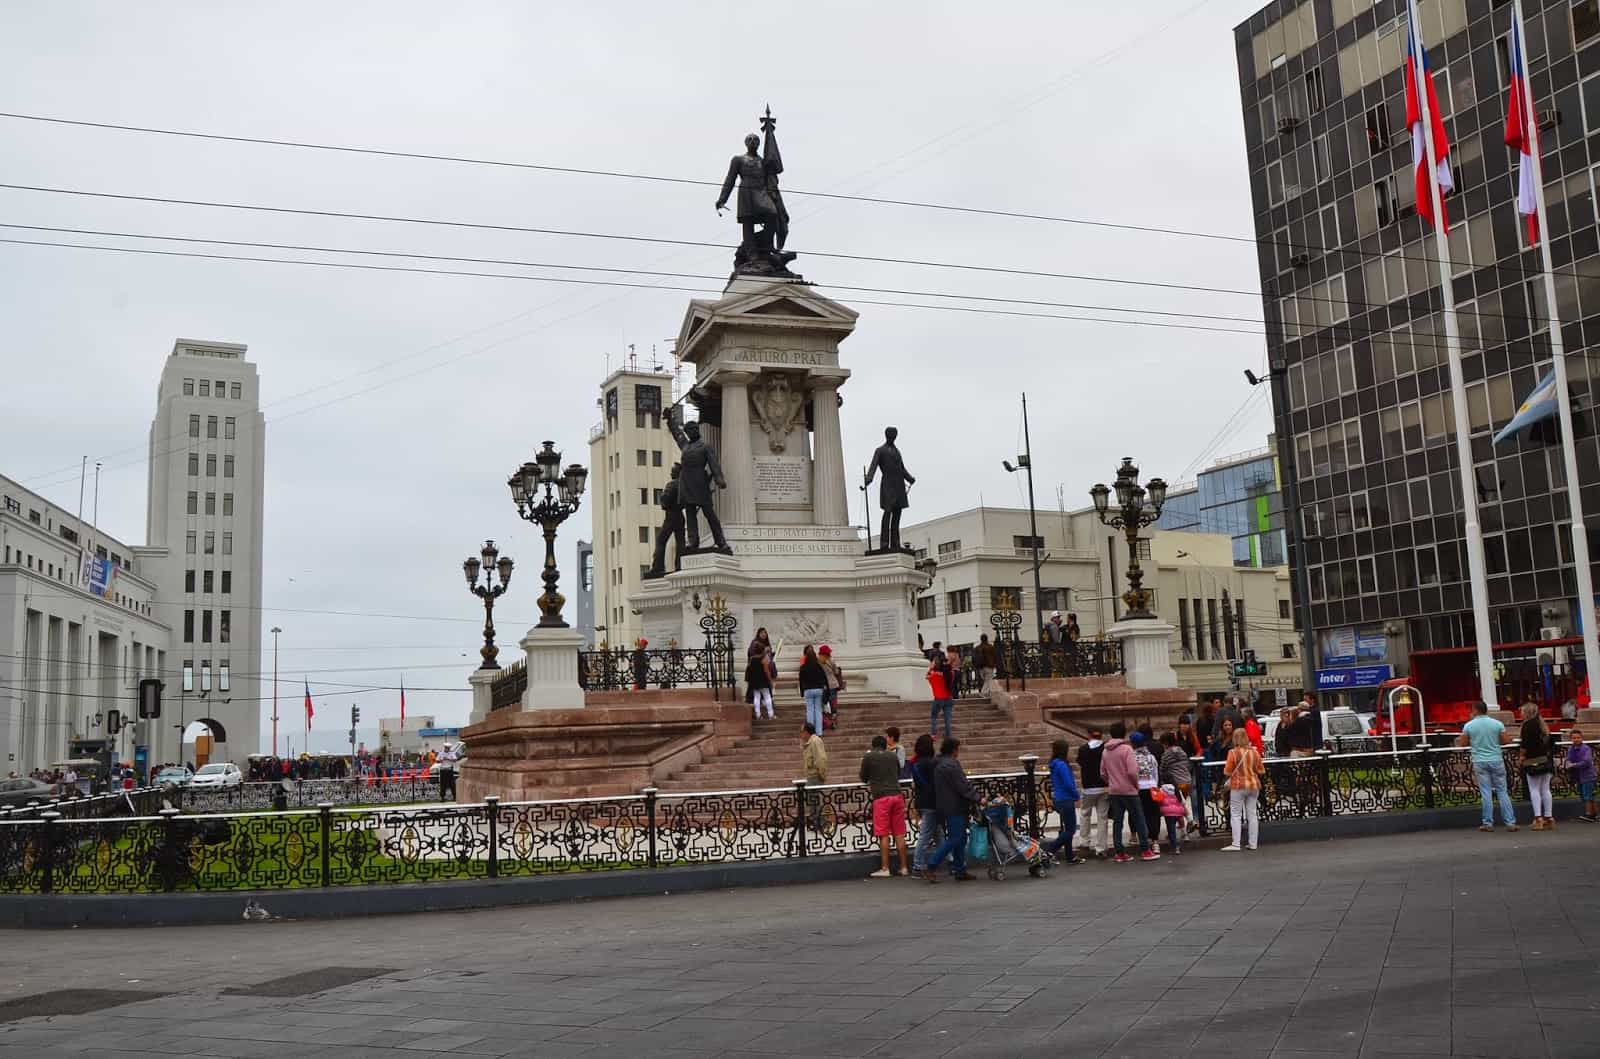 Monumento a los Heroes de Iquique in Valparaíso, Chile